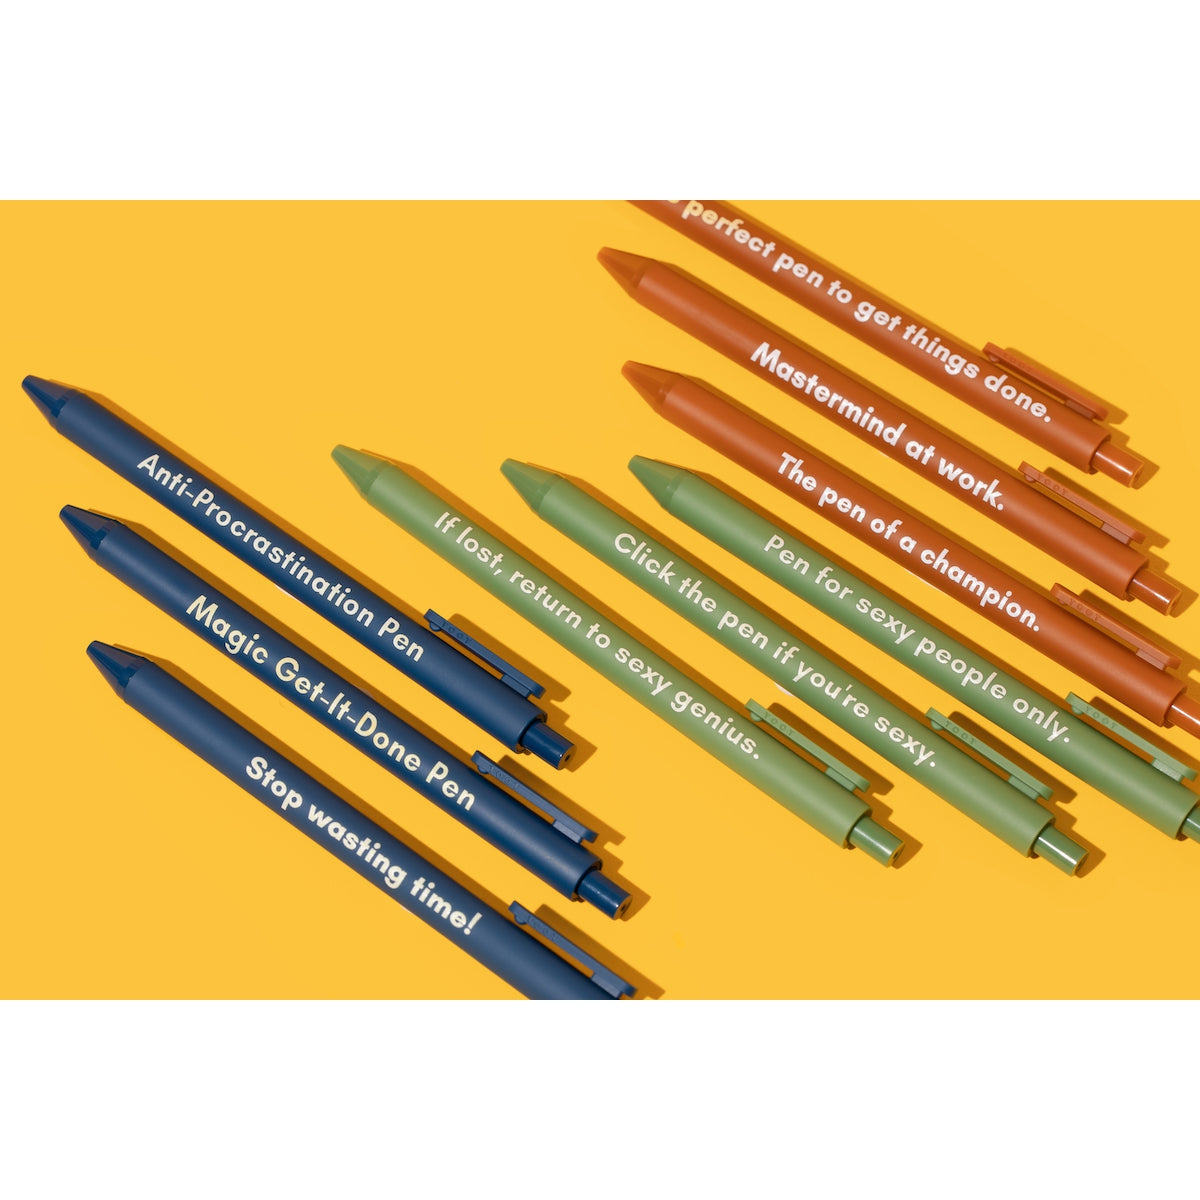 Mastermind Pen Set 🏆 | Gel Click Pen Gift Set | 3 Pens in Caramel